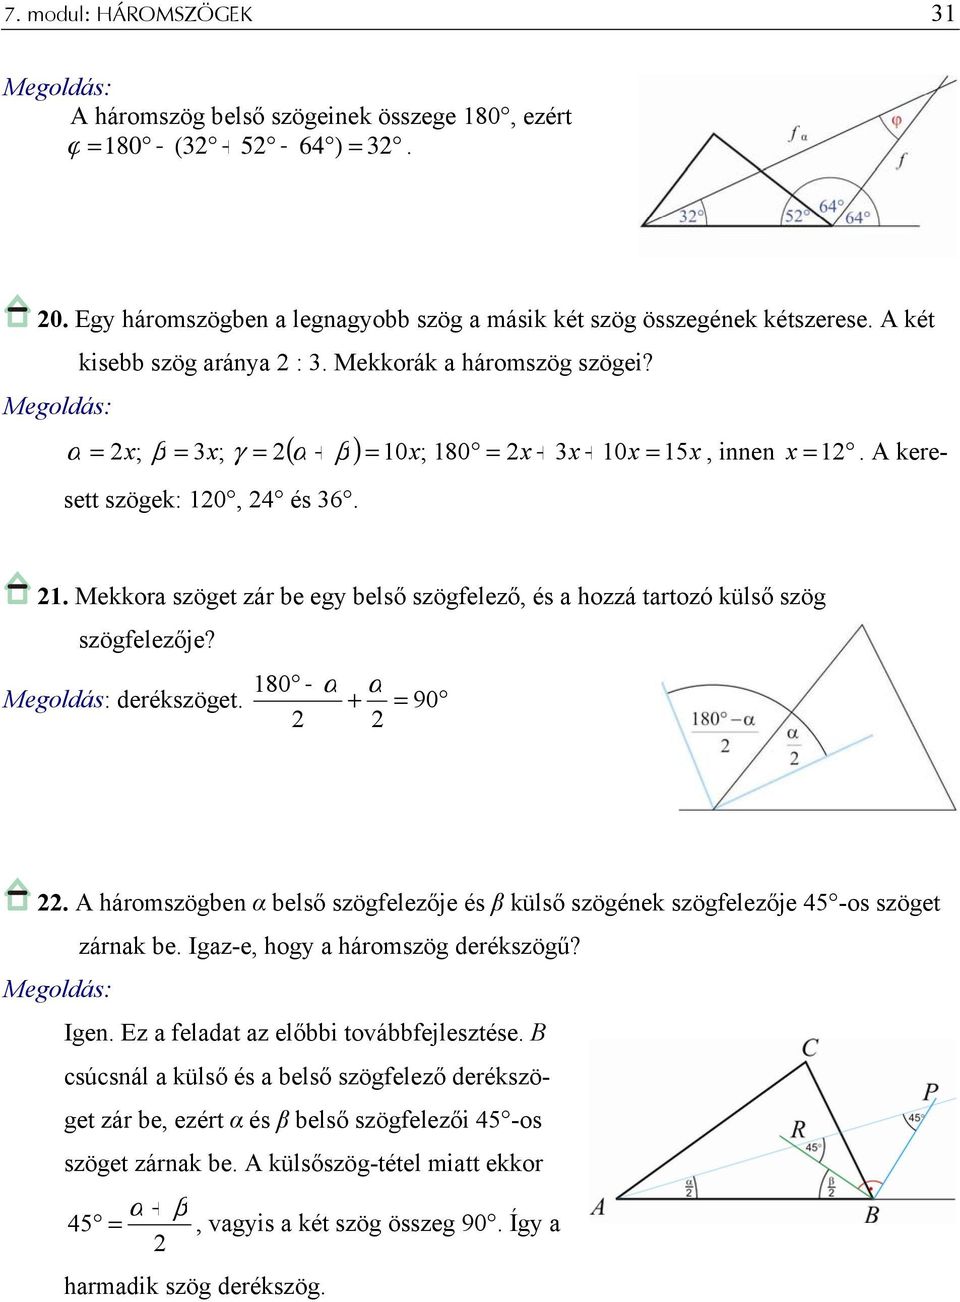 180 α α derékszöget. + = 90. A háromszögben α belső szögfelezője és β külső szögének szögfelezője 45 -os szöget zárnak be. Igaz-e, hogy a háromszög derékszögű? Igen.